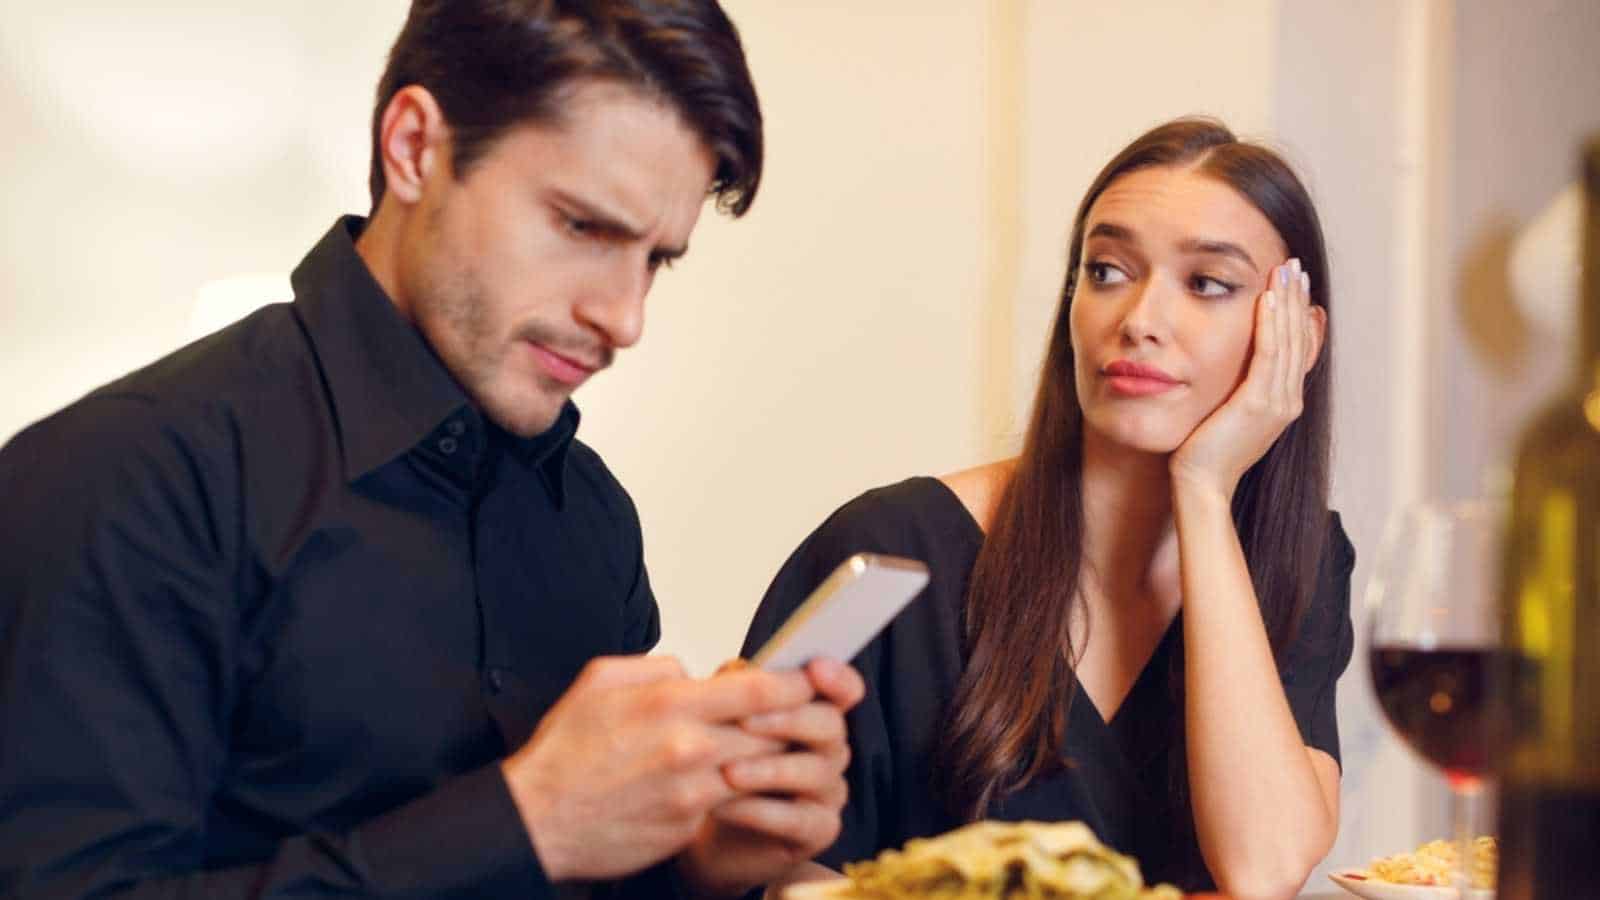 Man using mobile ignoring girlfriend